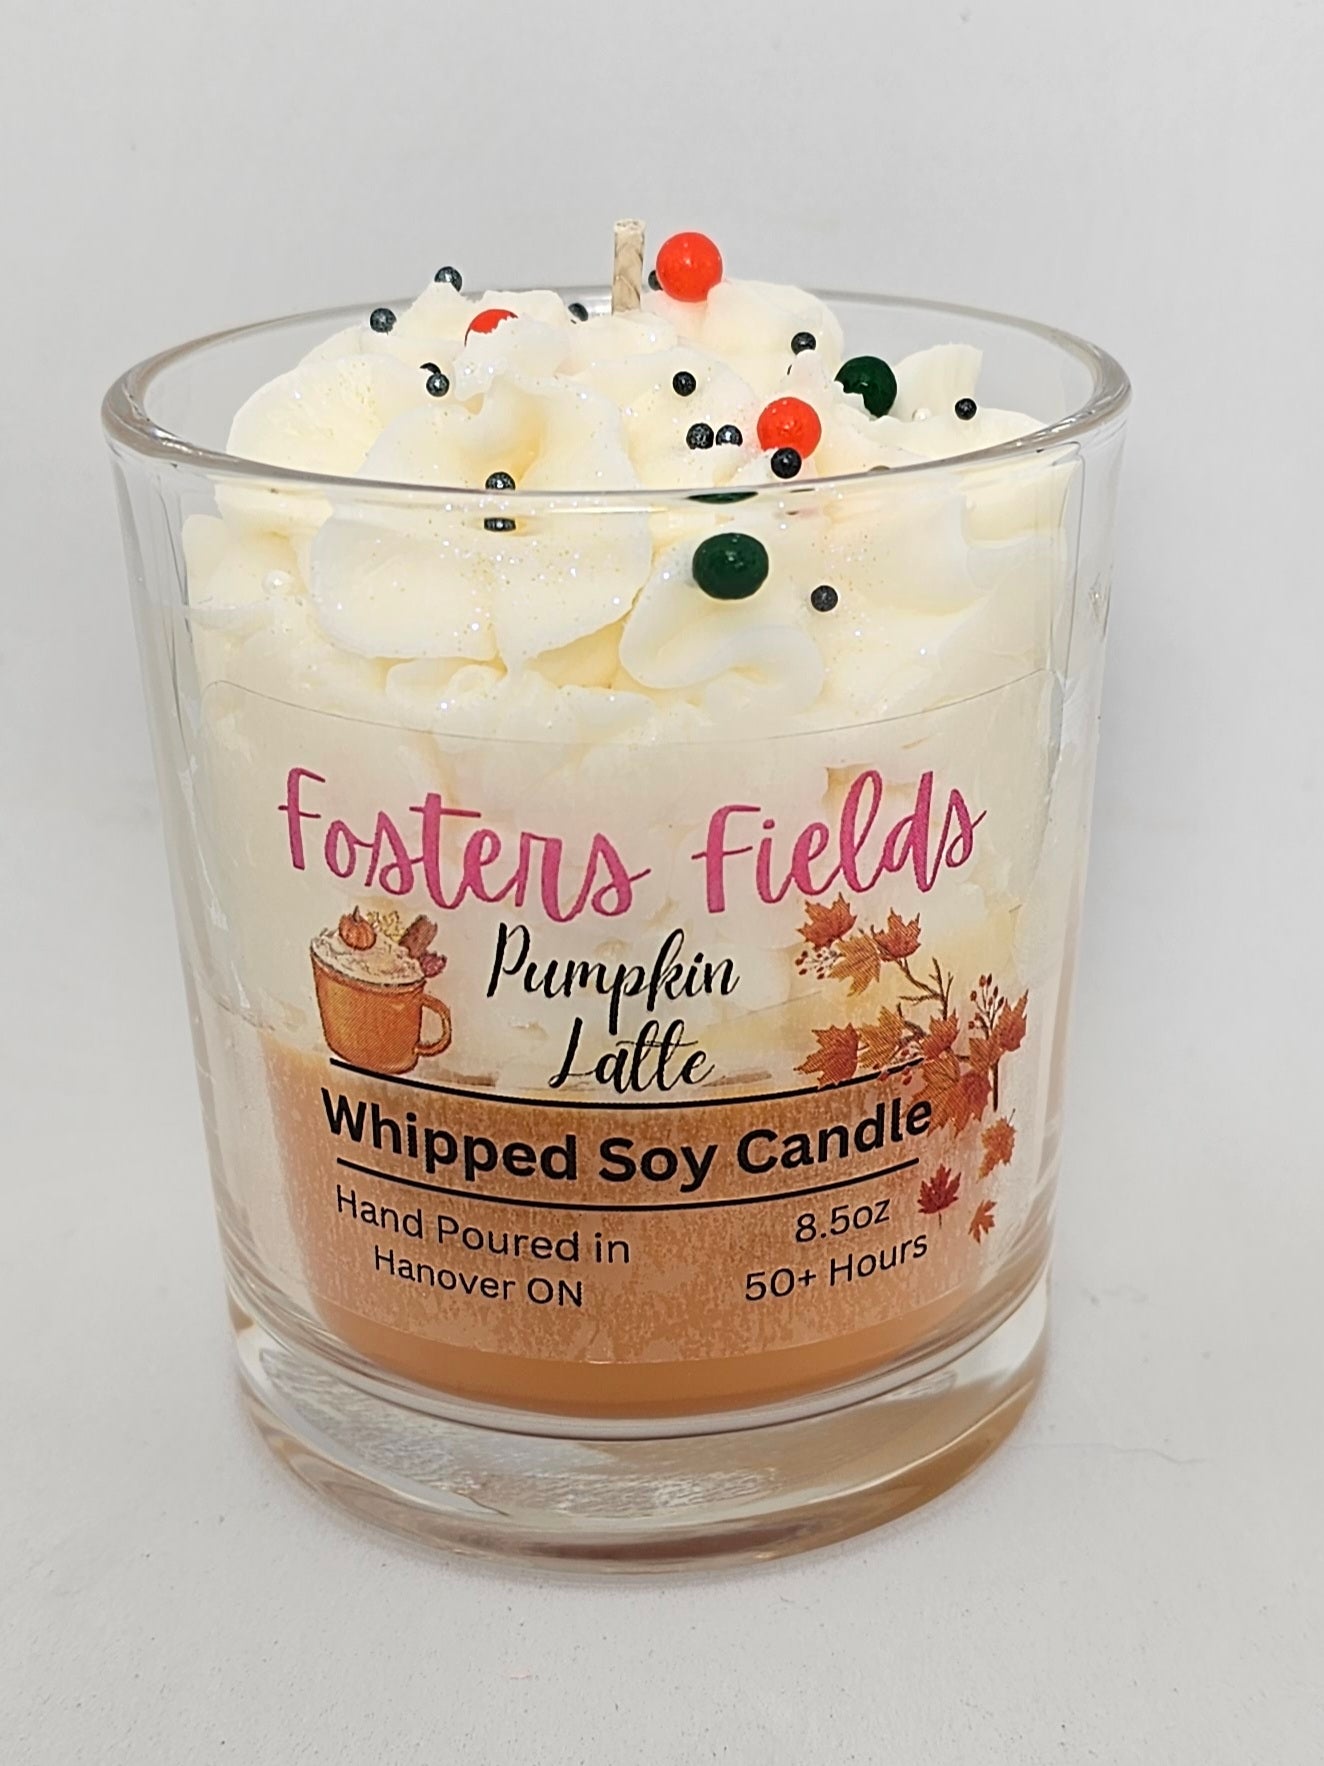 Pumpkin Latte Soy Candle - FostersFields